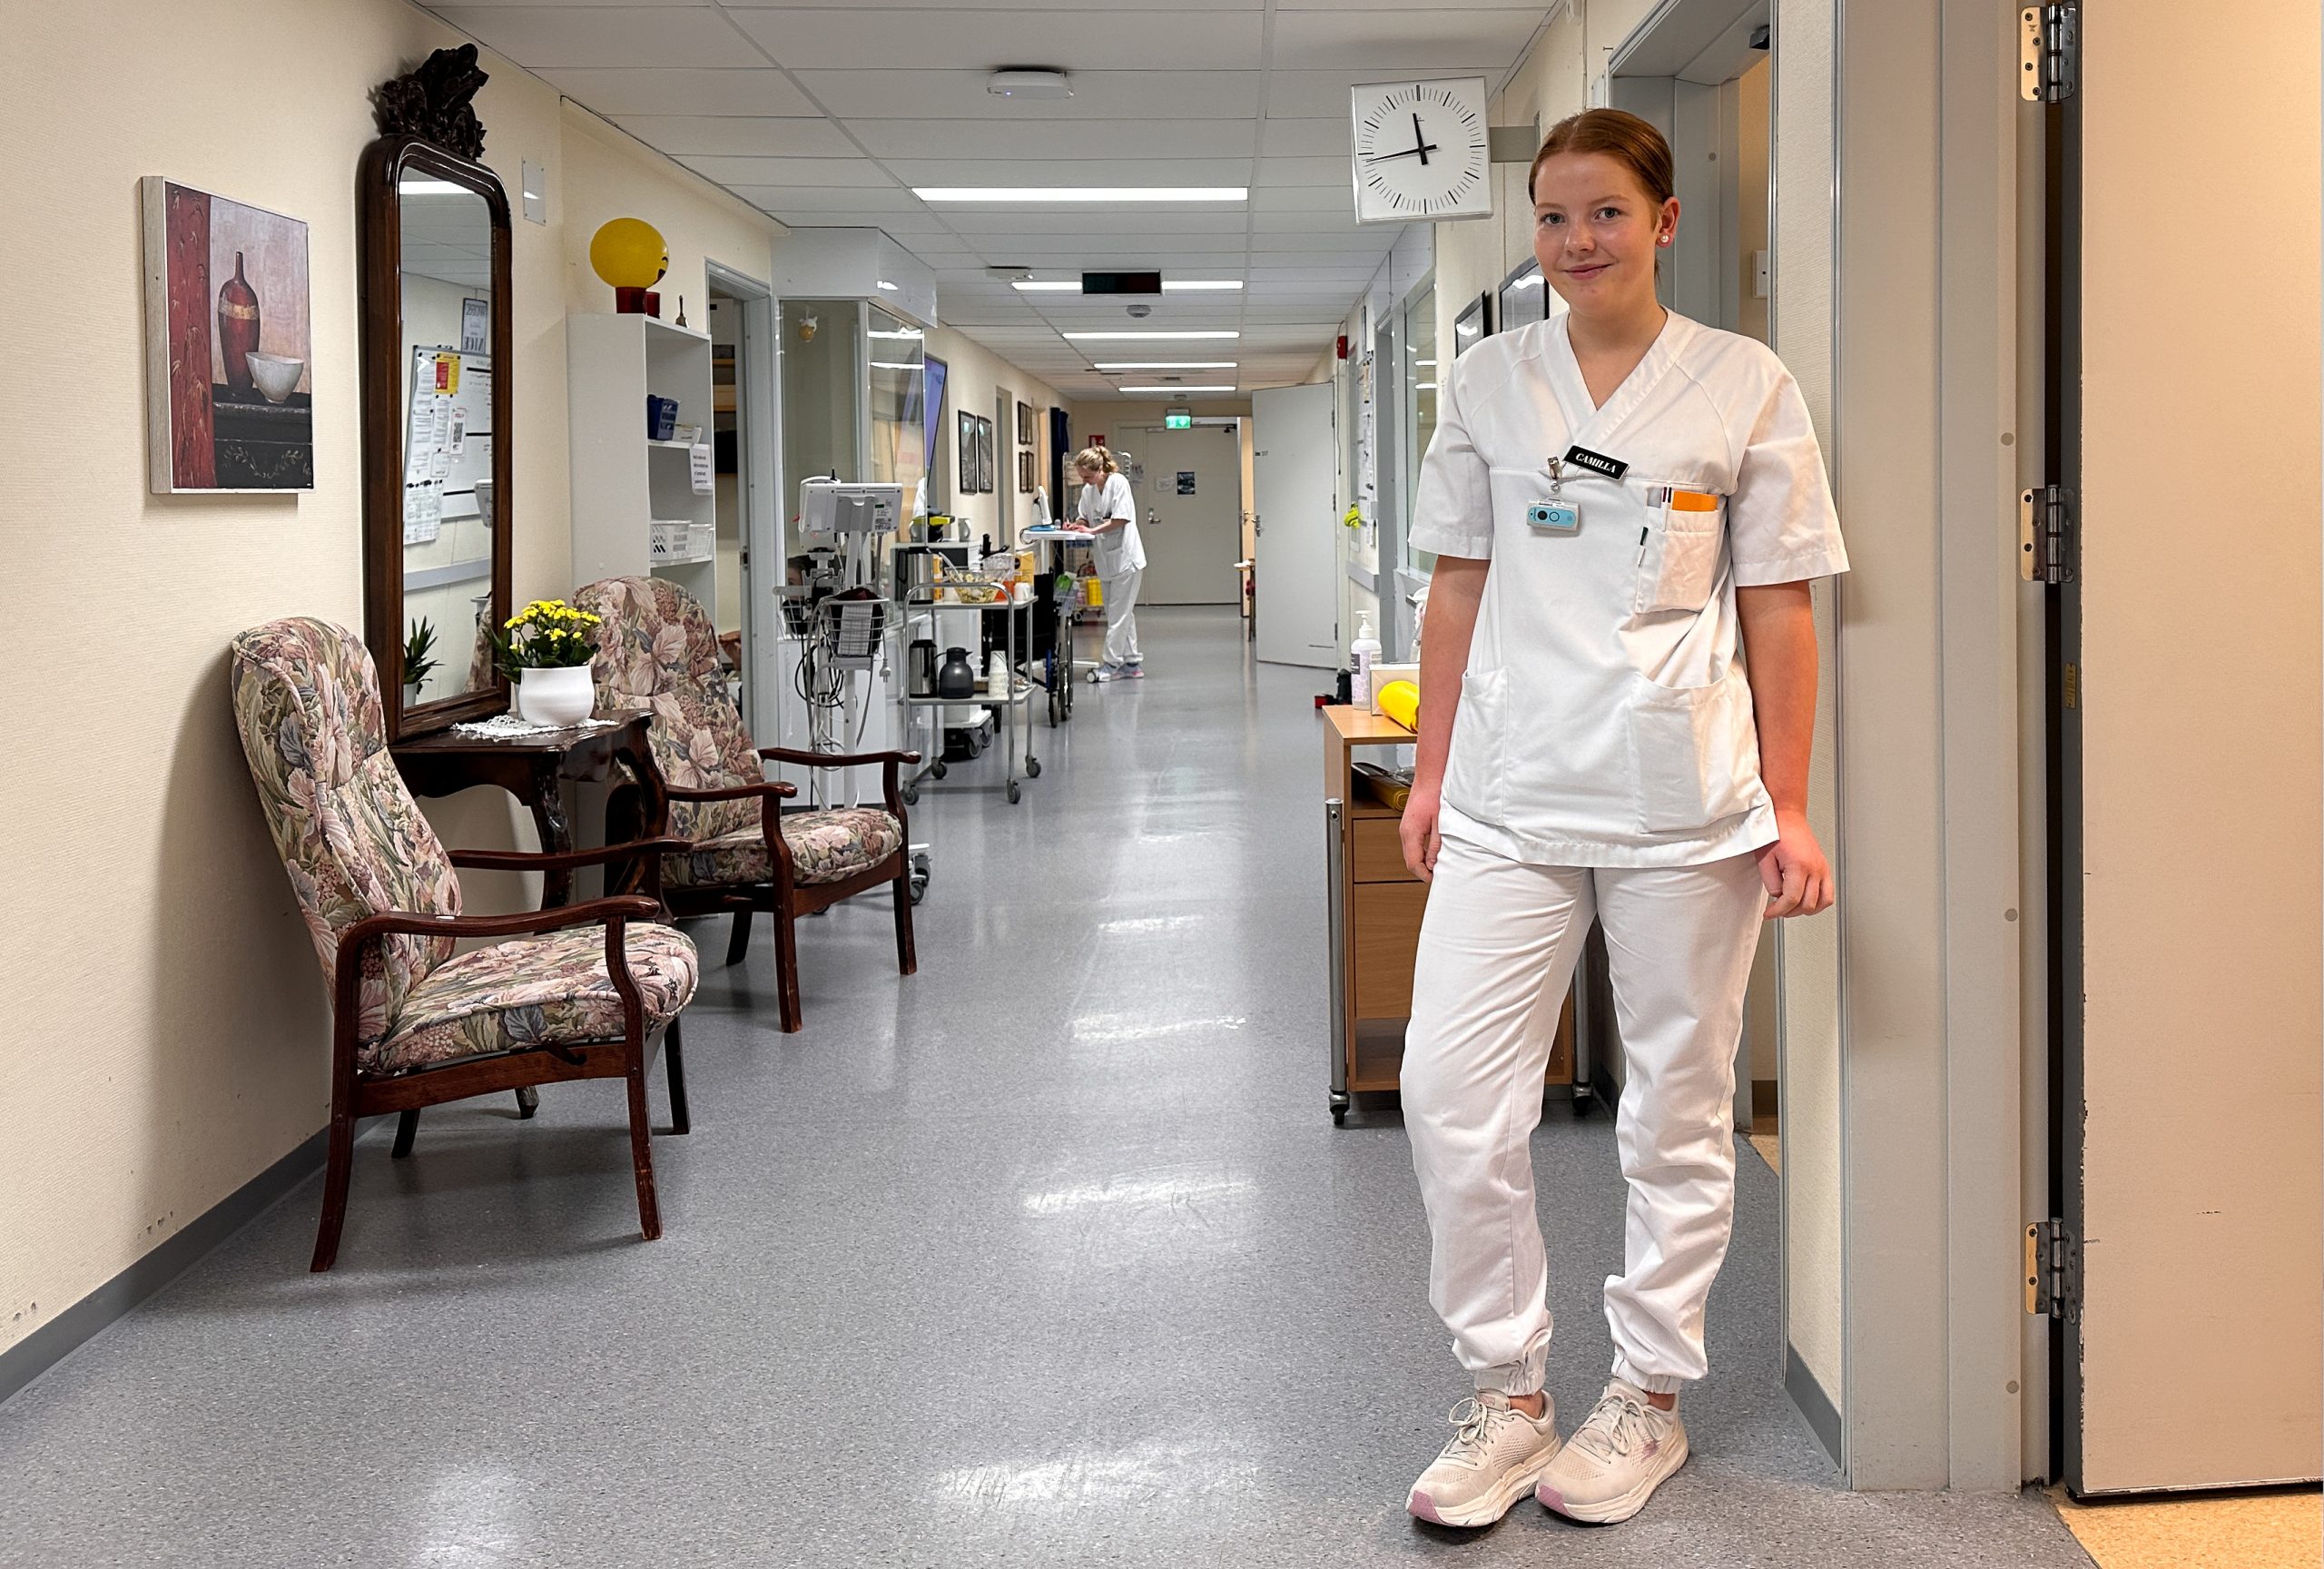 2Vest-ansatte i hvite sykehusklær